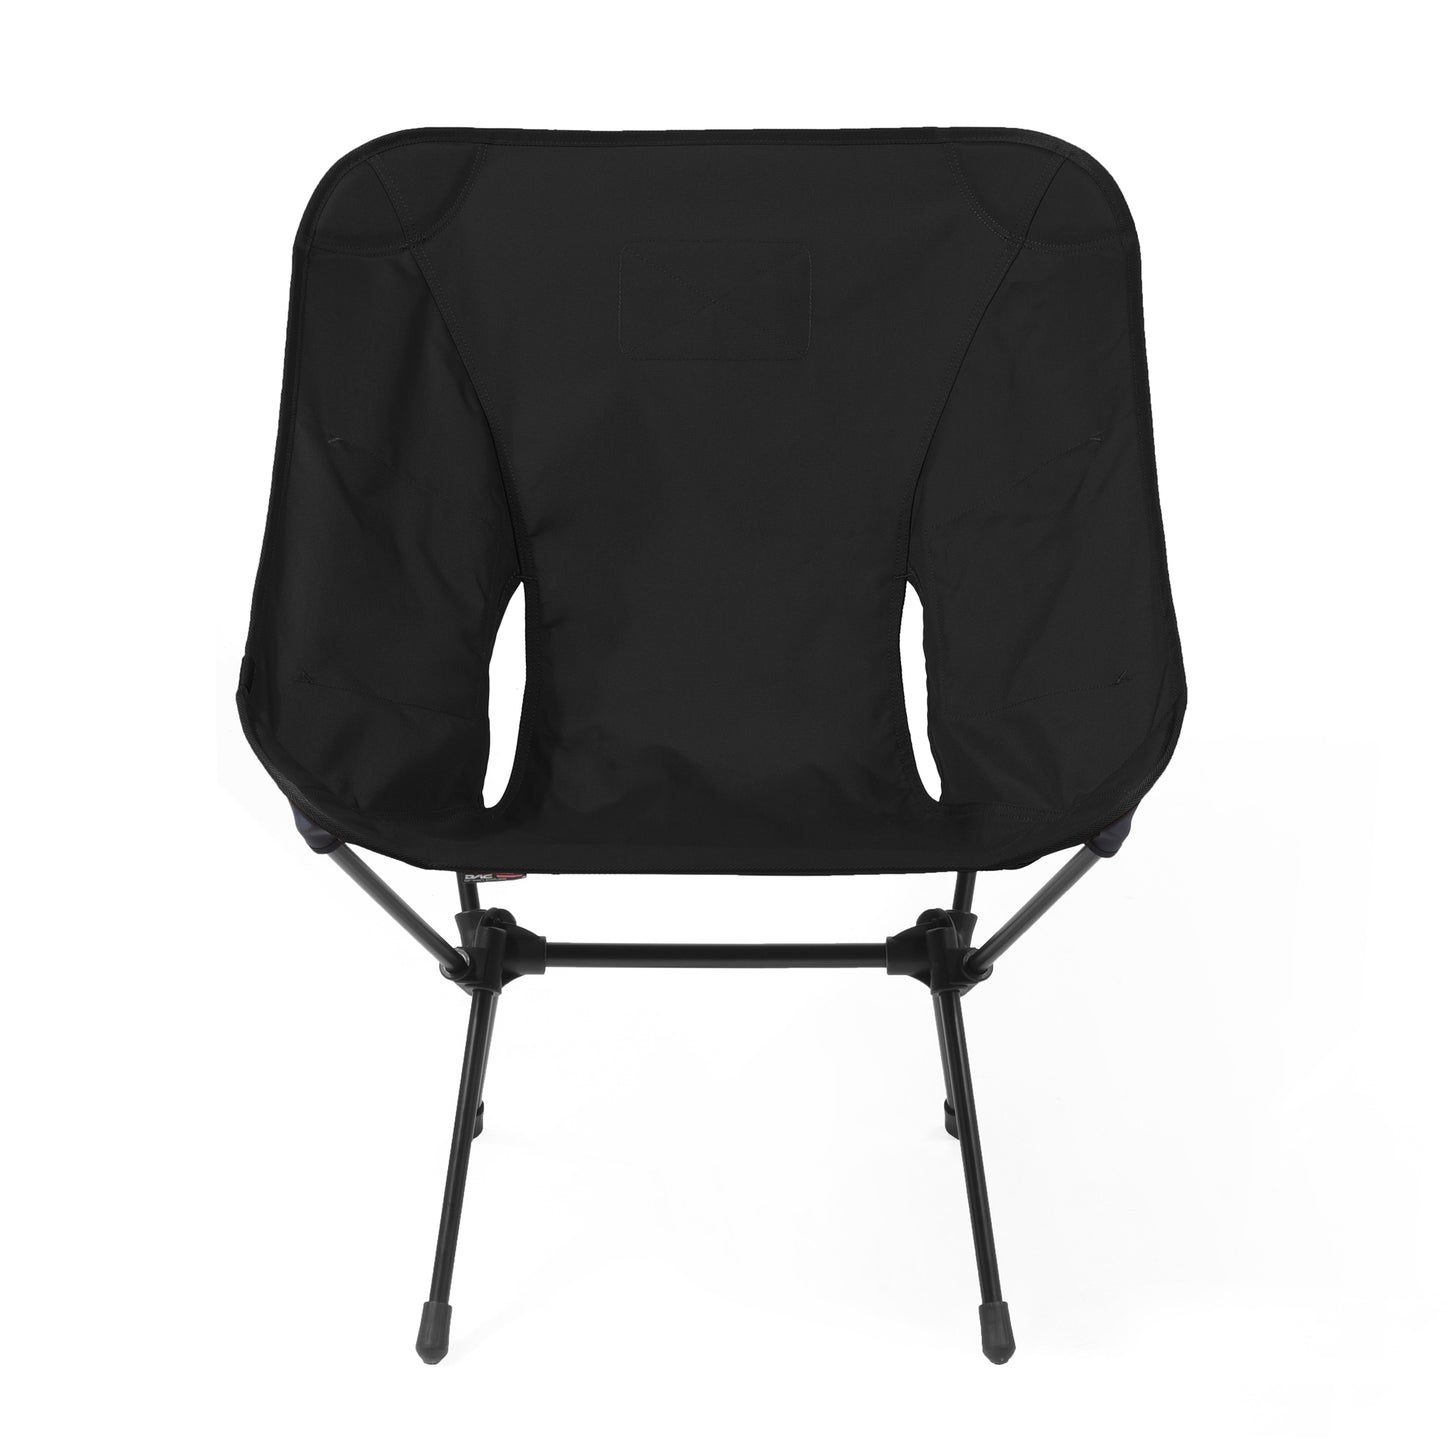 Tac. Chair L - Black